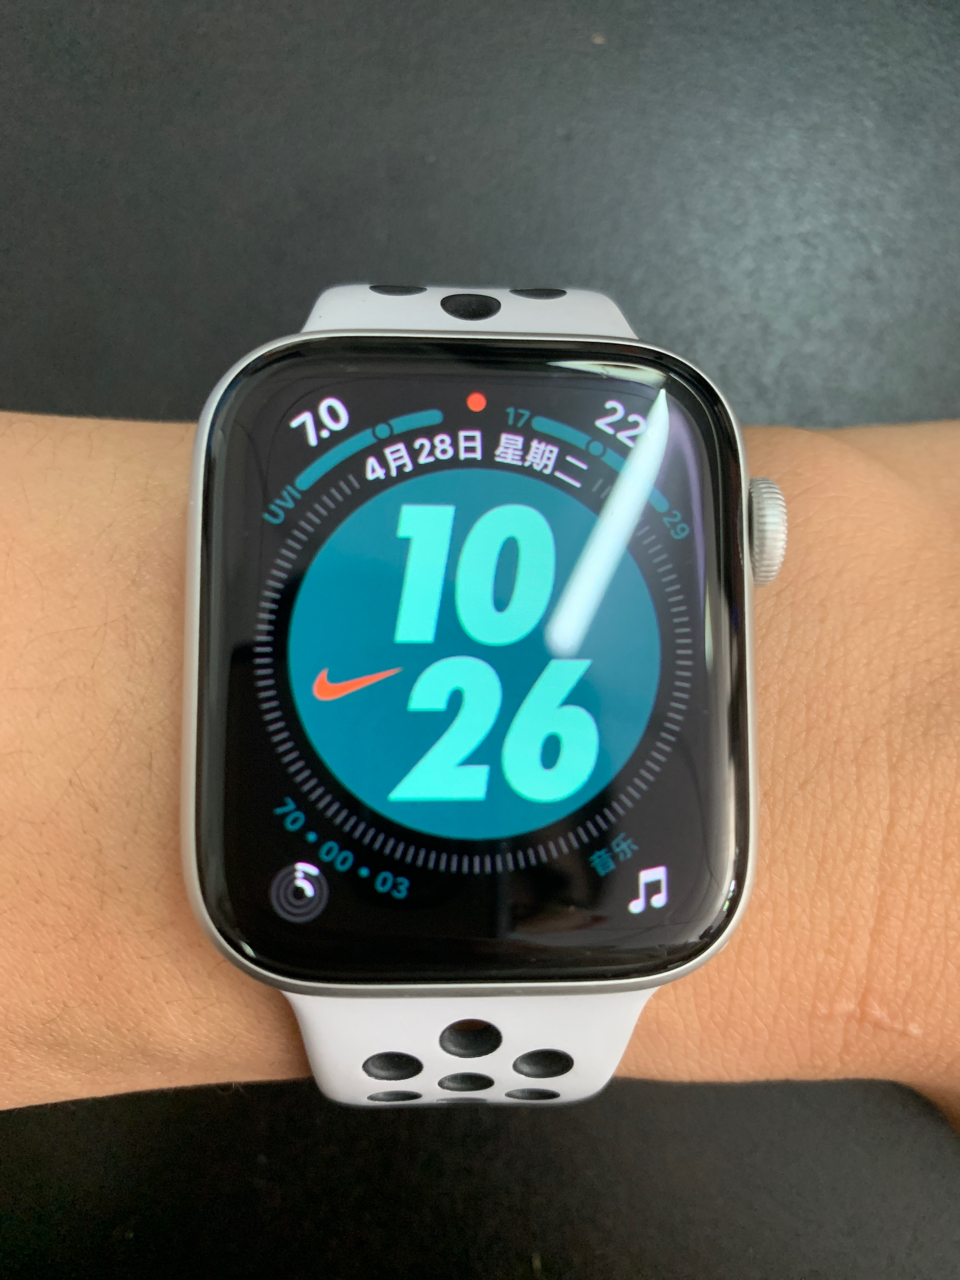 apple watch 4 nike版 44mm 银色表盘白色表带,2019.5.